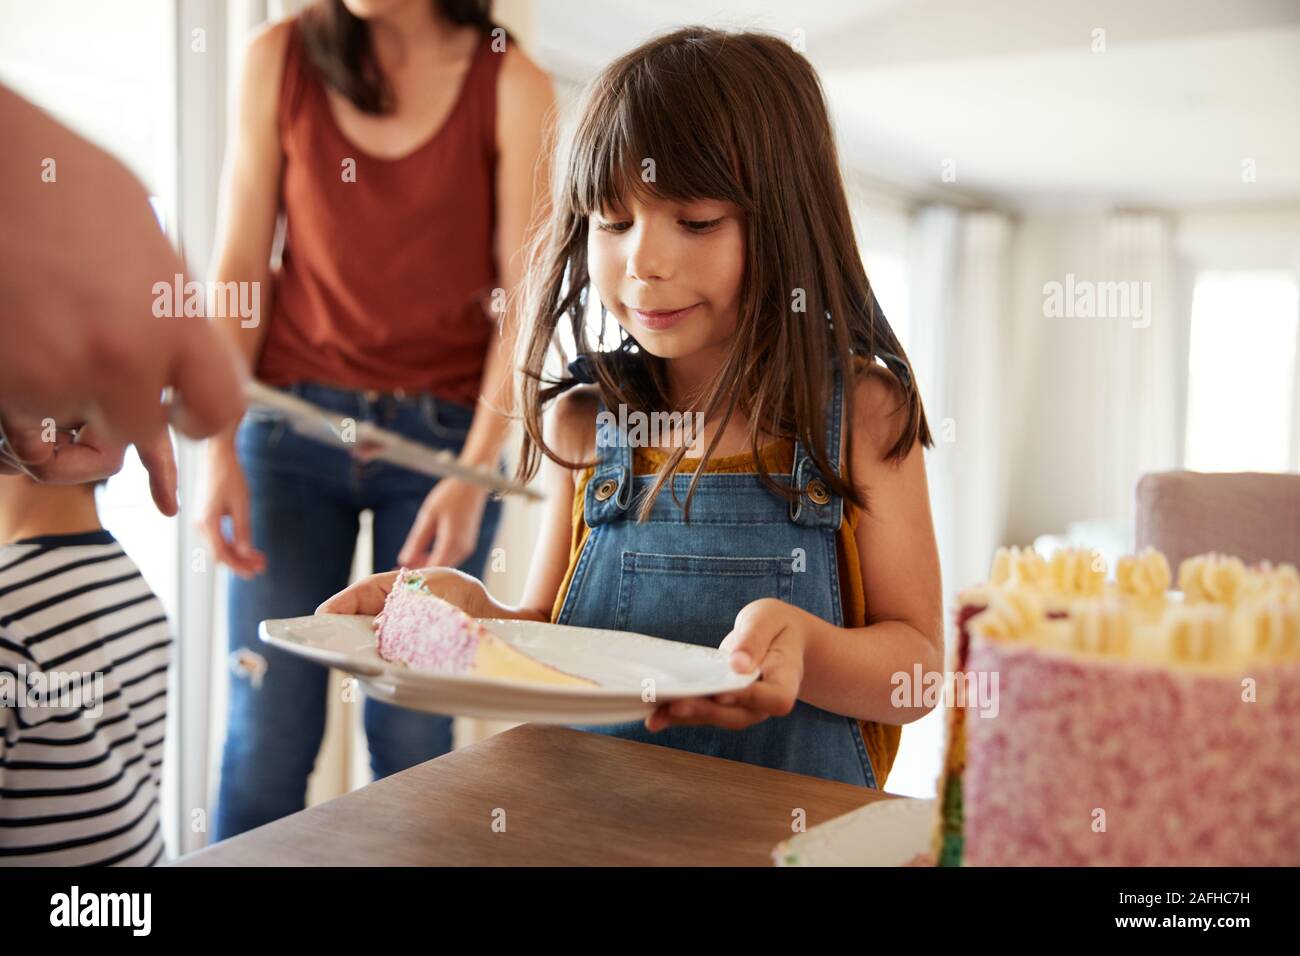 Sechs Jahre altes Mädchen Geburtstag Kuchen bei einer Familienfeier serviert wird, in der Nähe Stockfoto